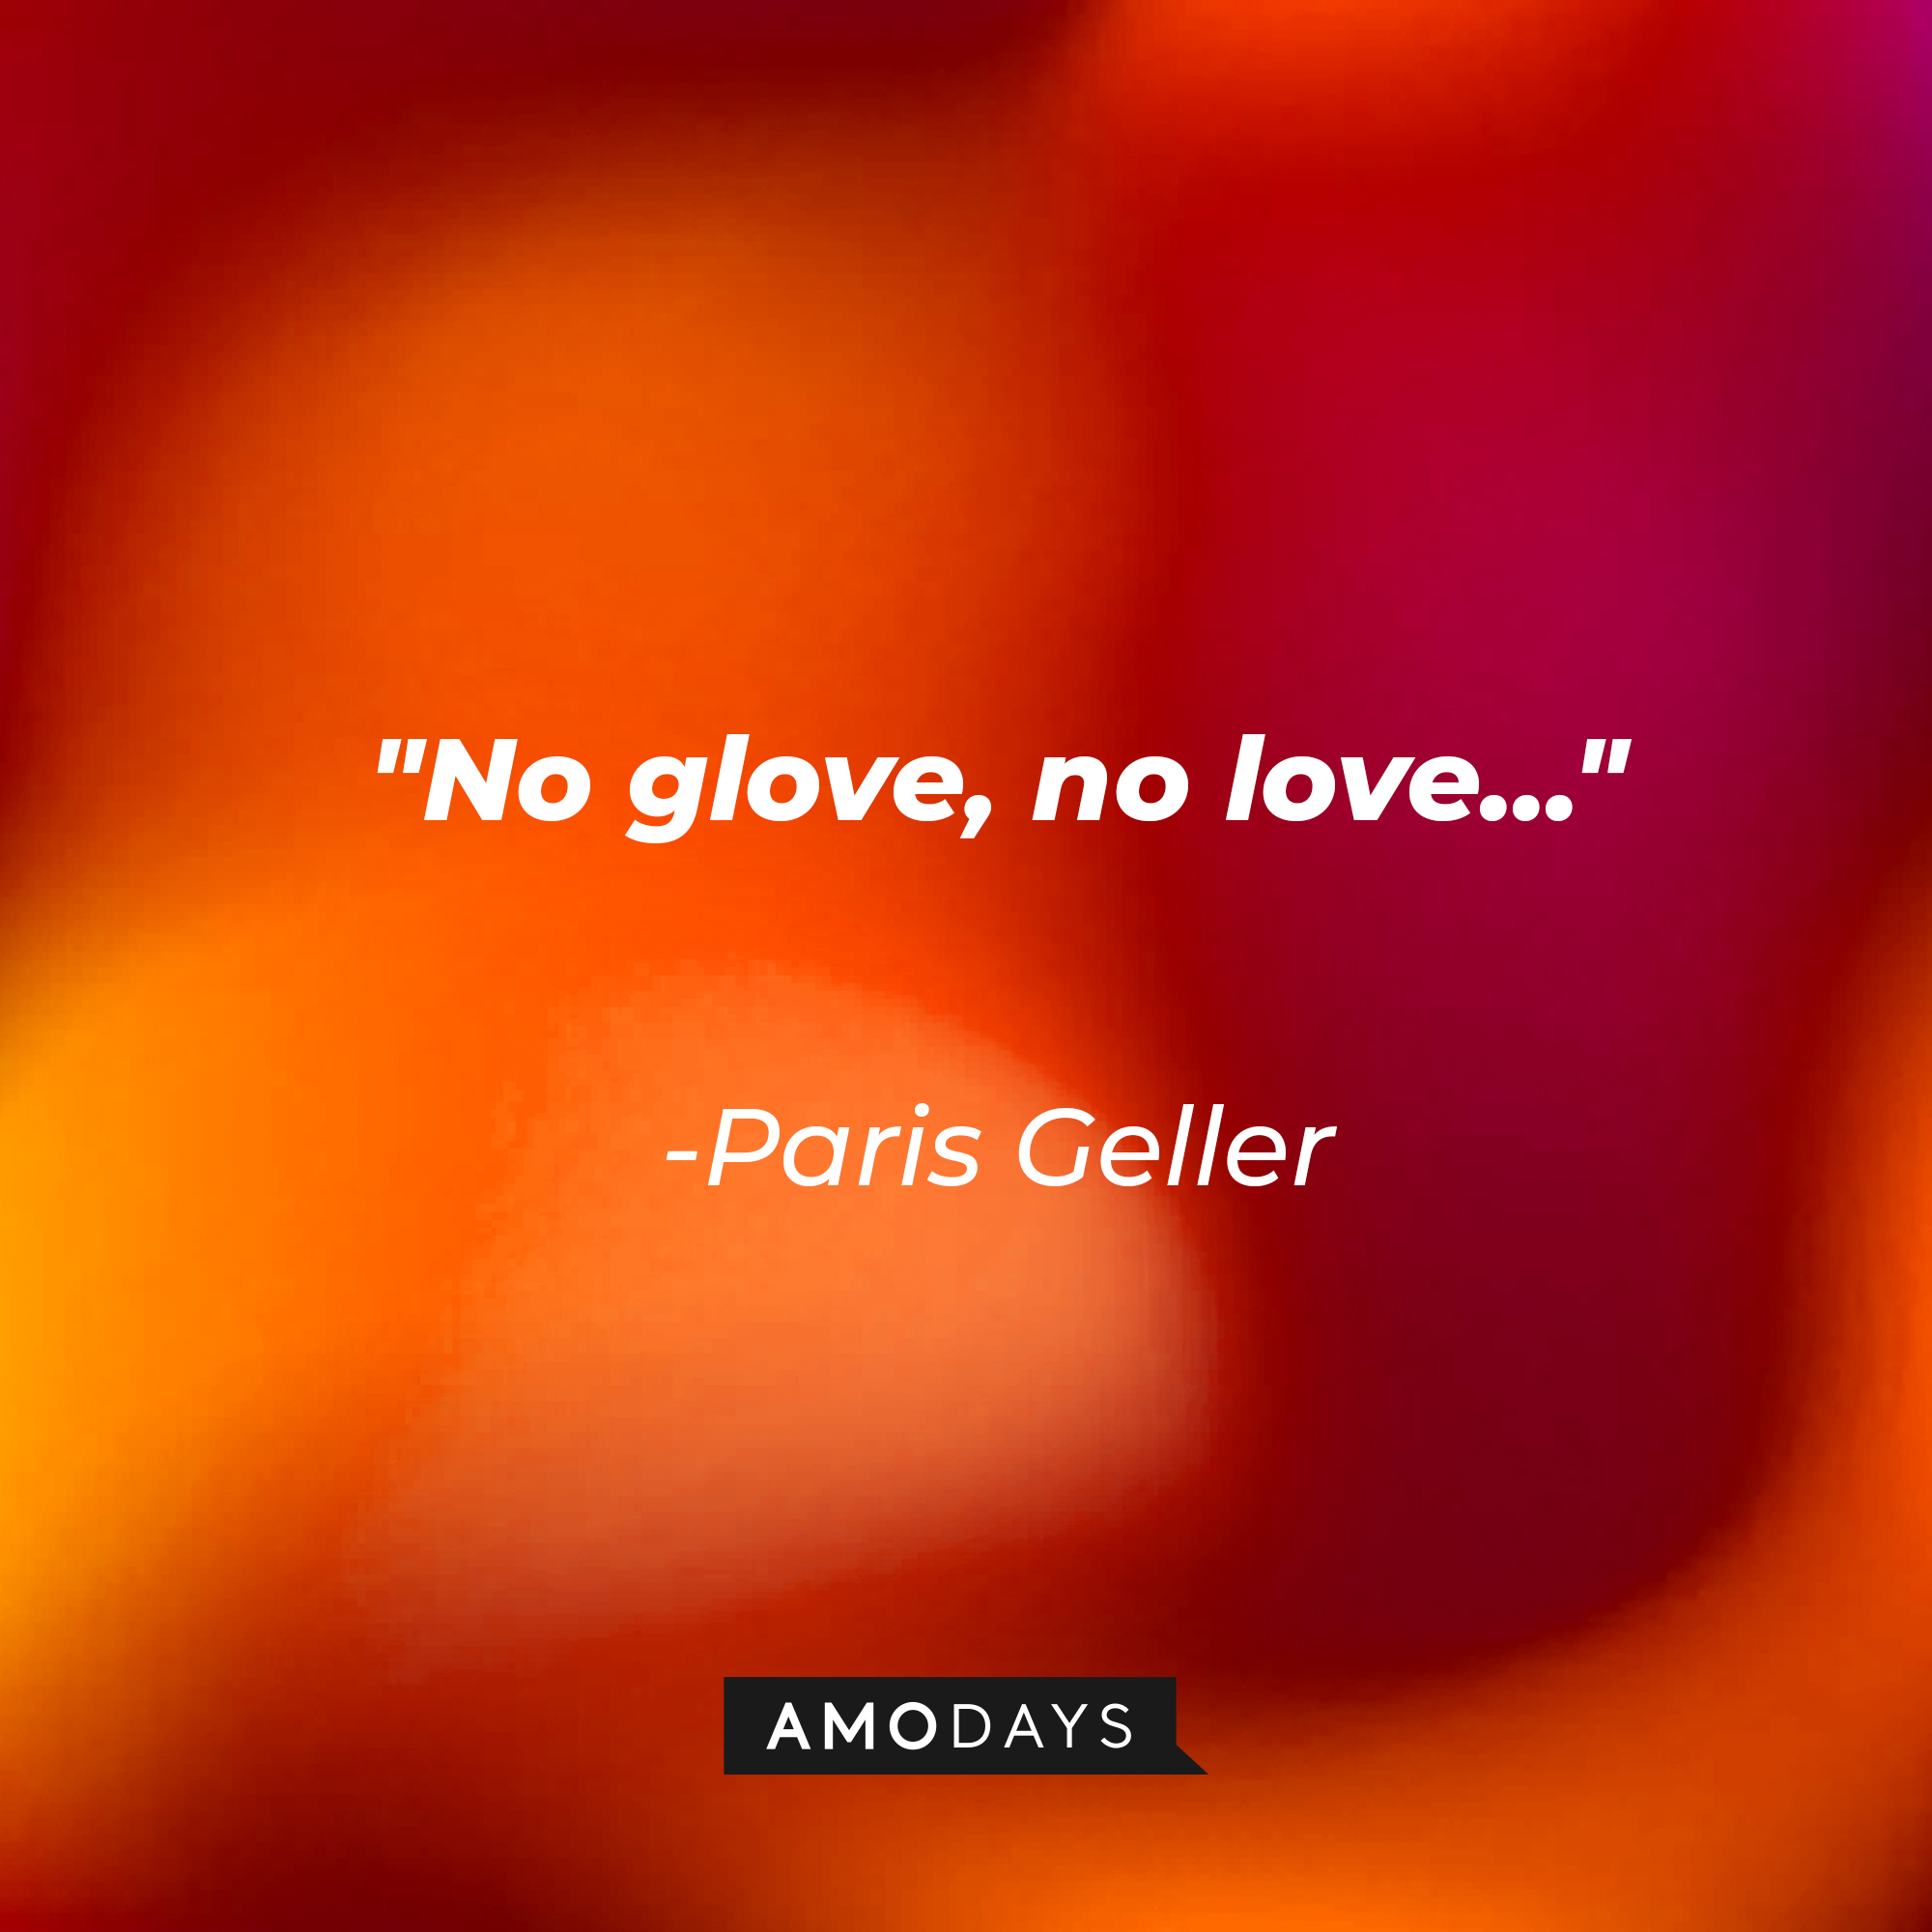 Paris Geller’s quote: “No glove, no love...” | Source: AmoDays